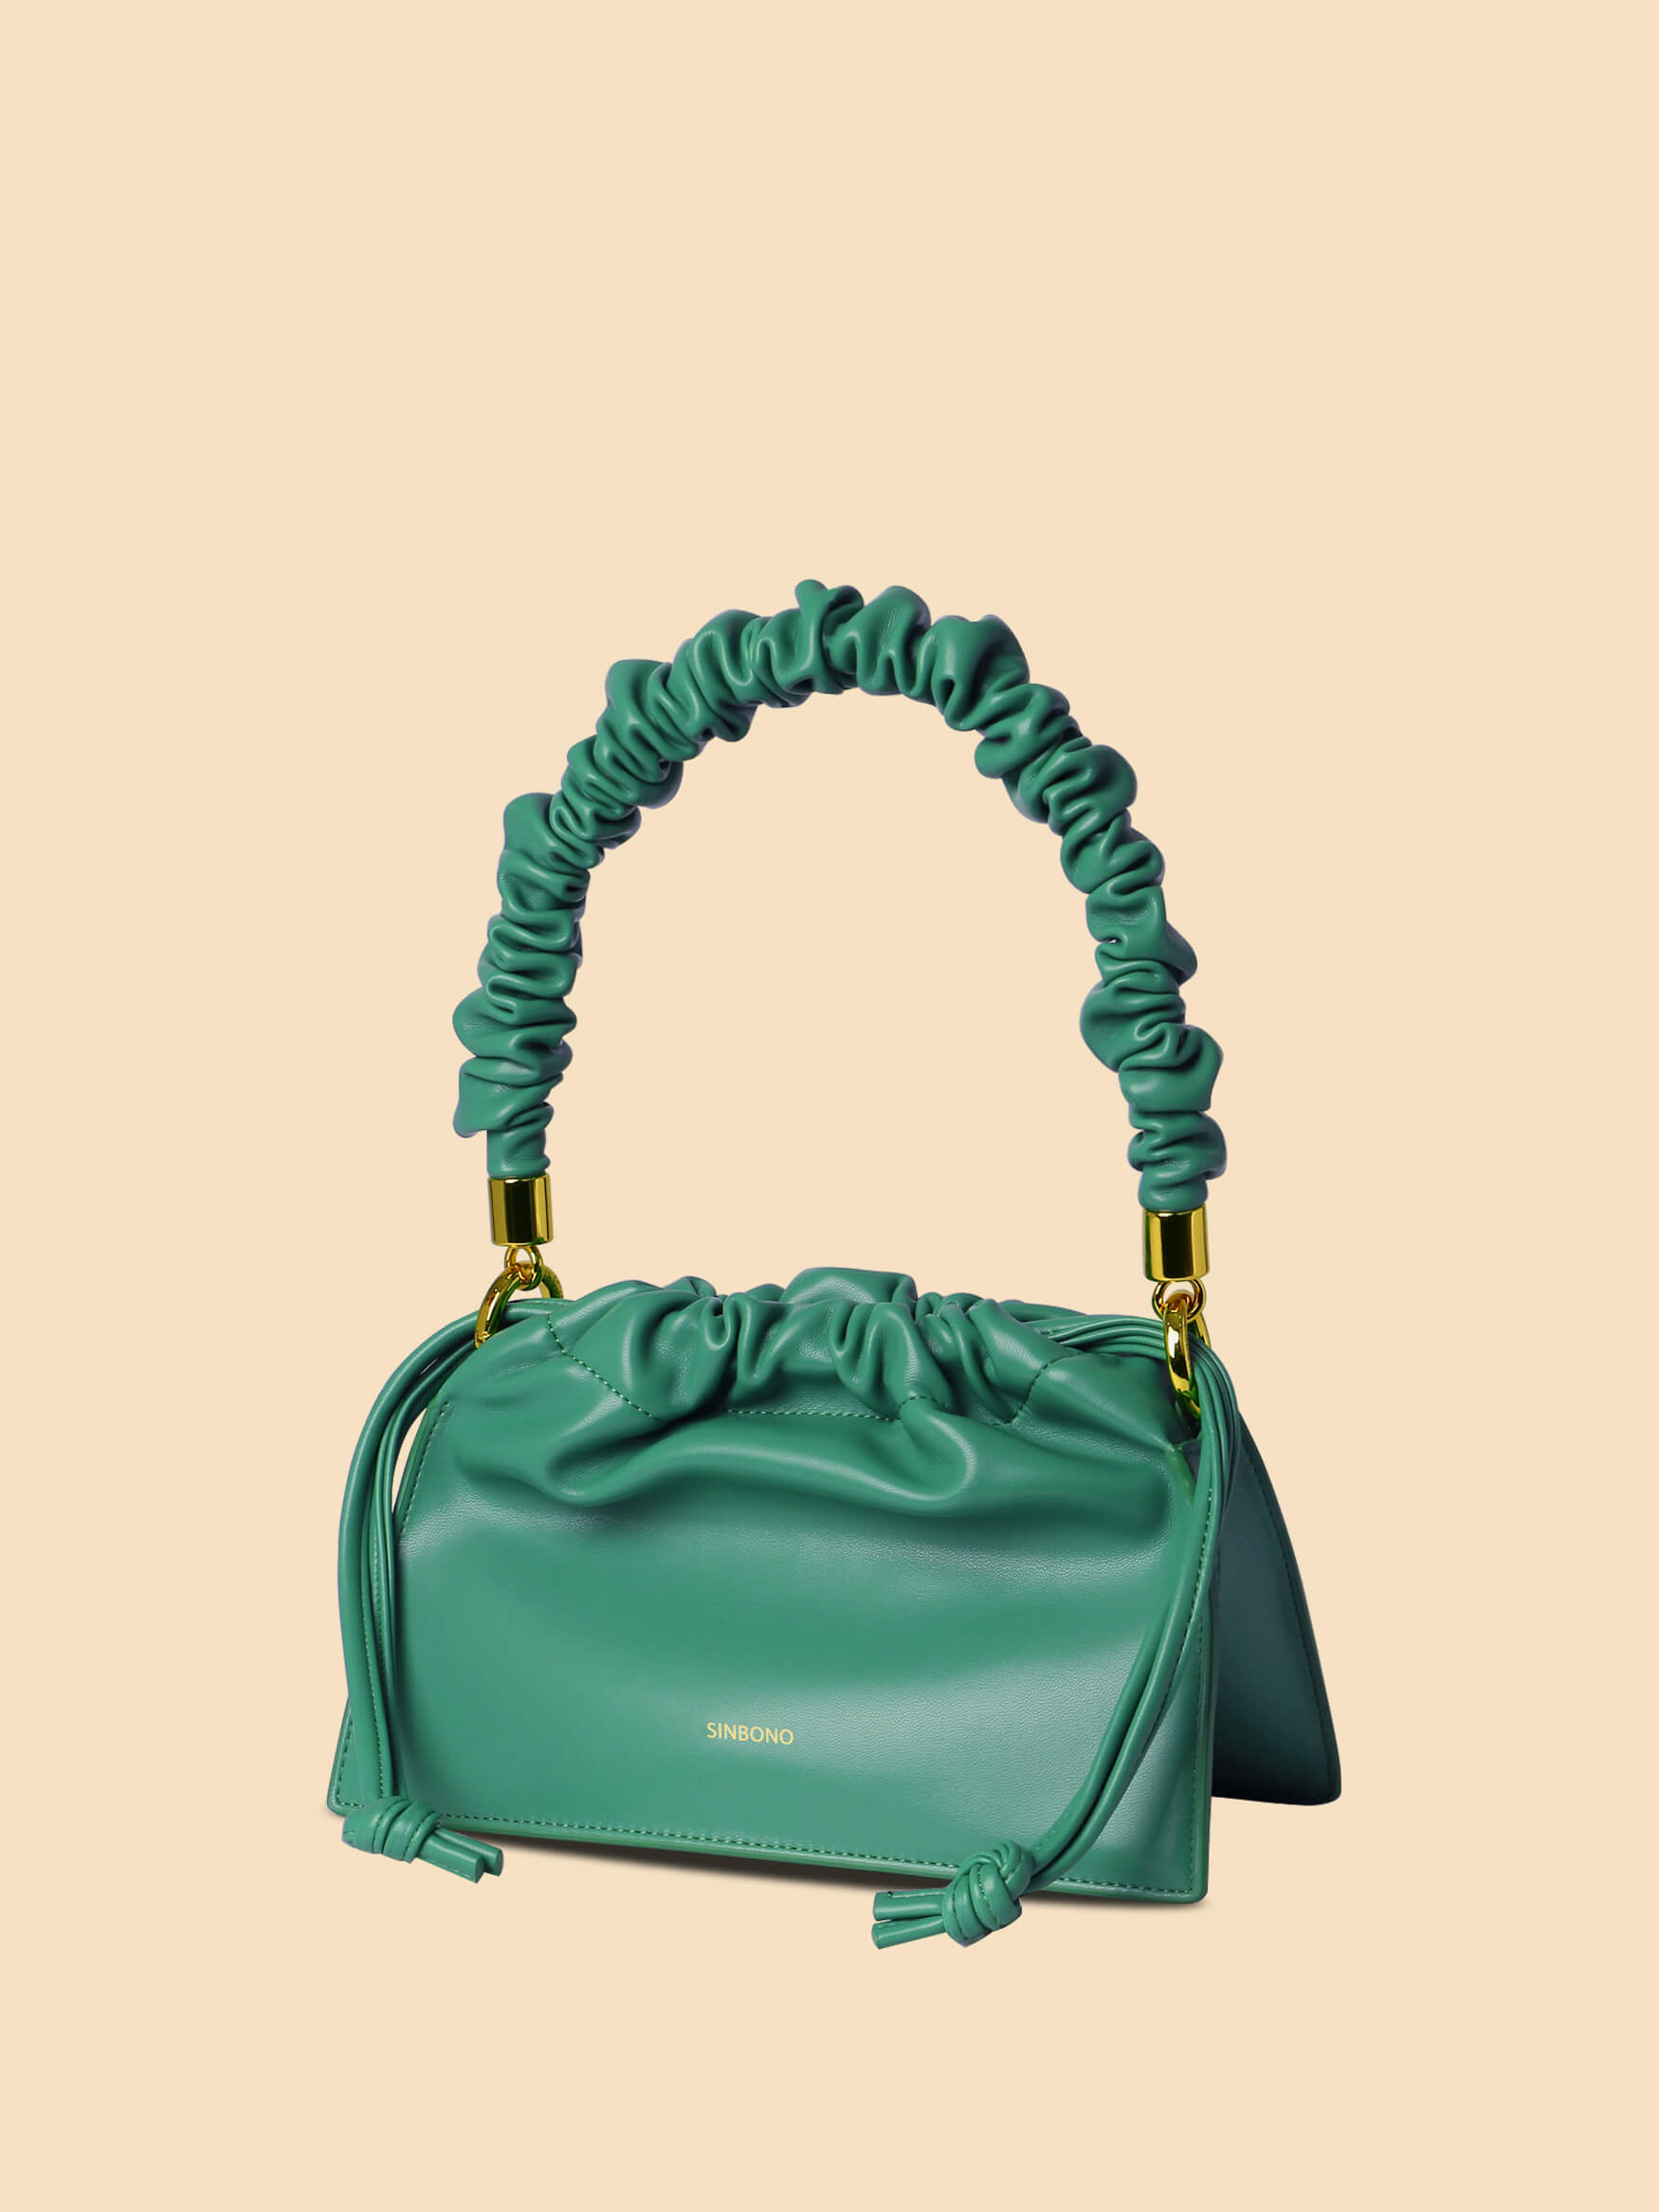 SINBONO Drawstring Handbag Green